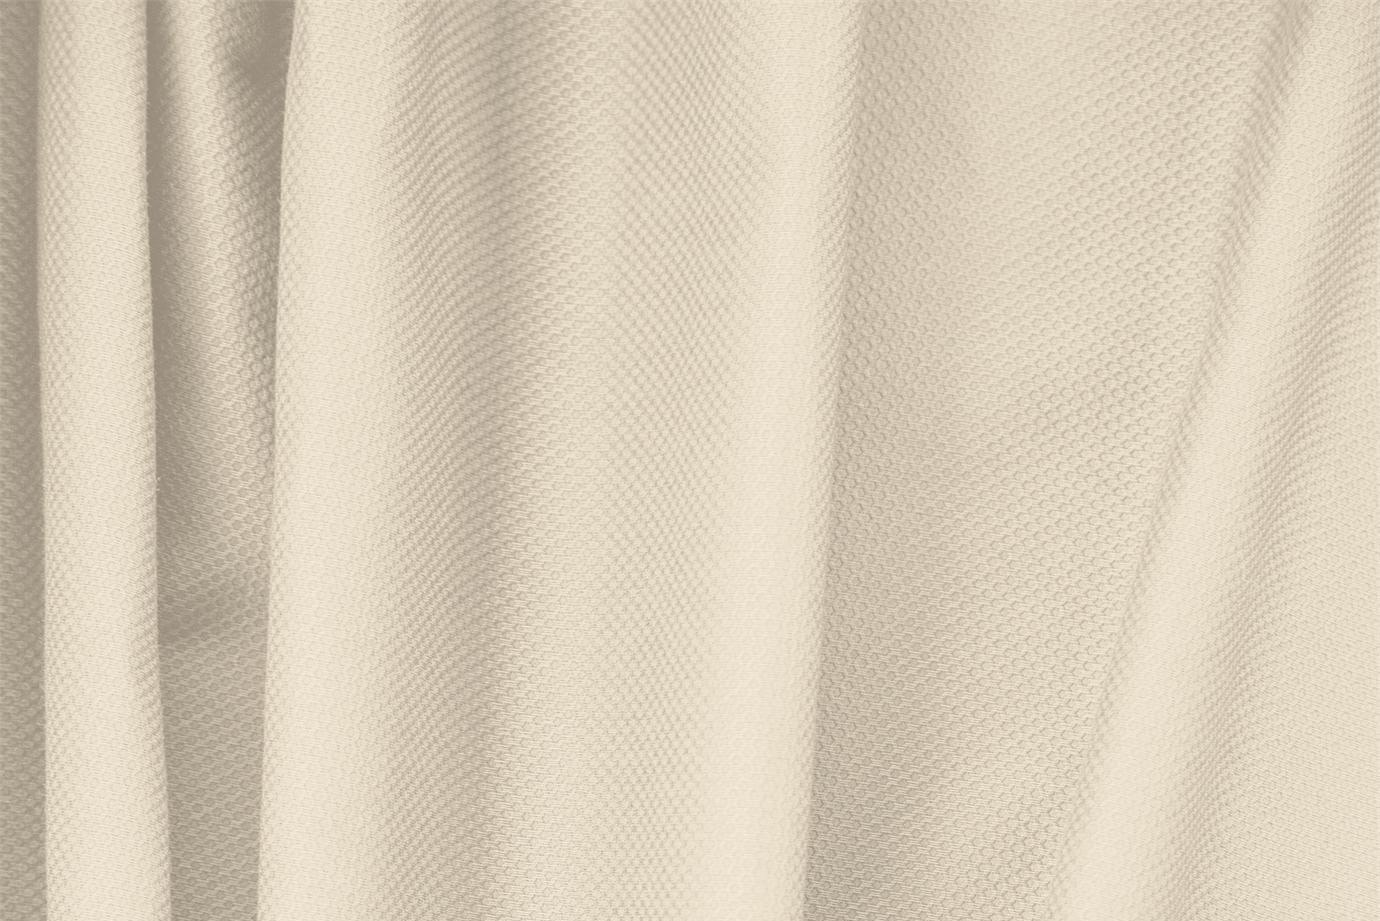 Tessuto Piquet Stretch Beige Ecru in Cotone, Stretch per abbigliamento